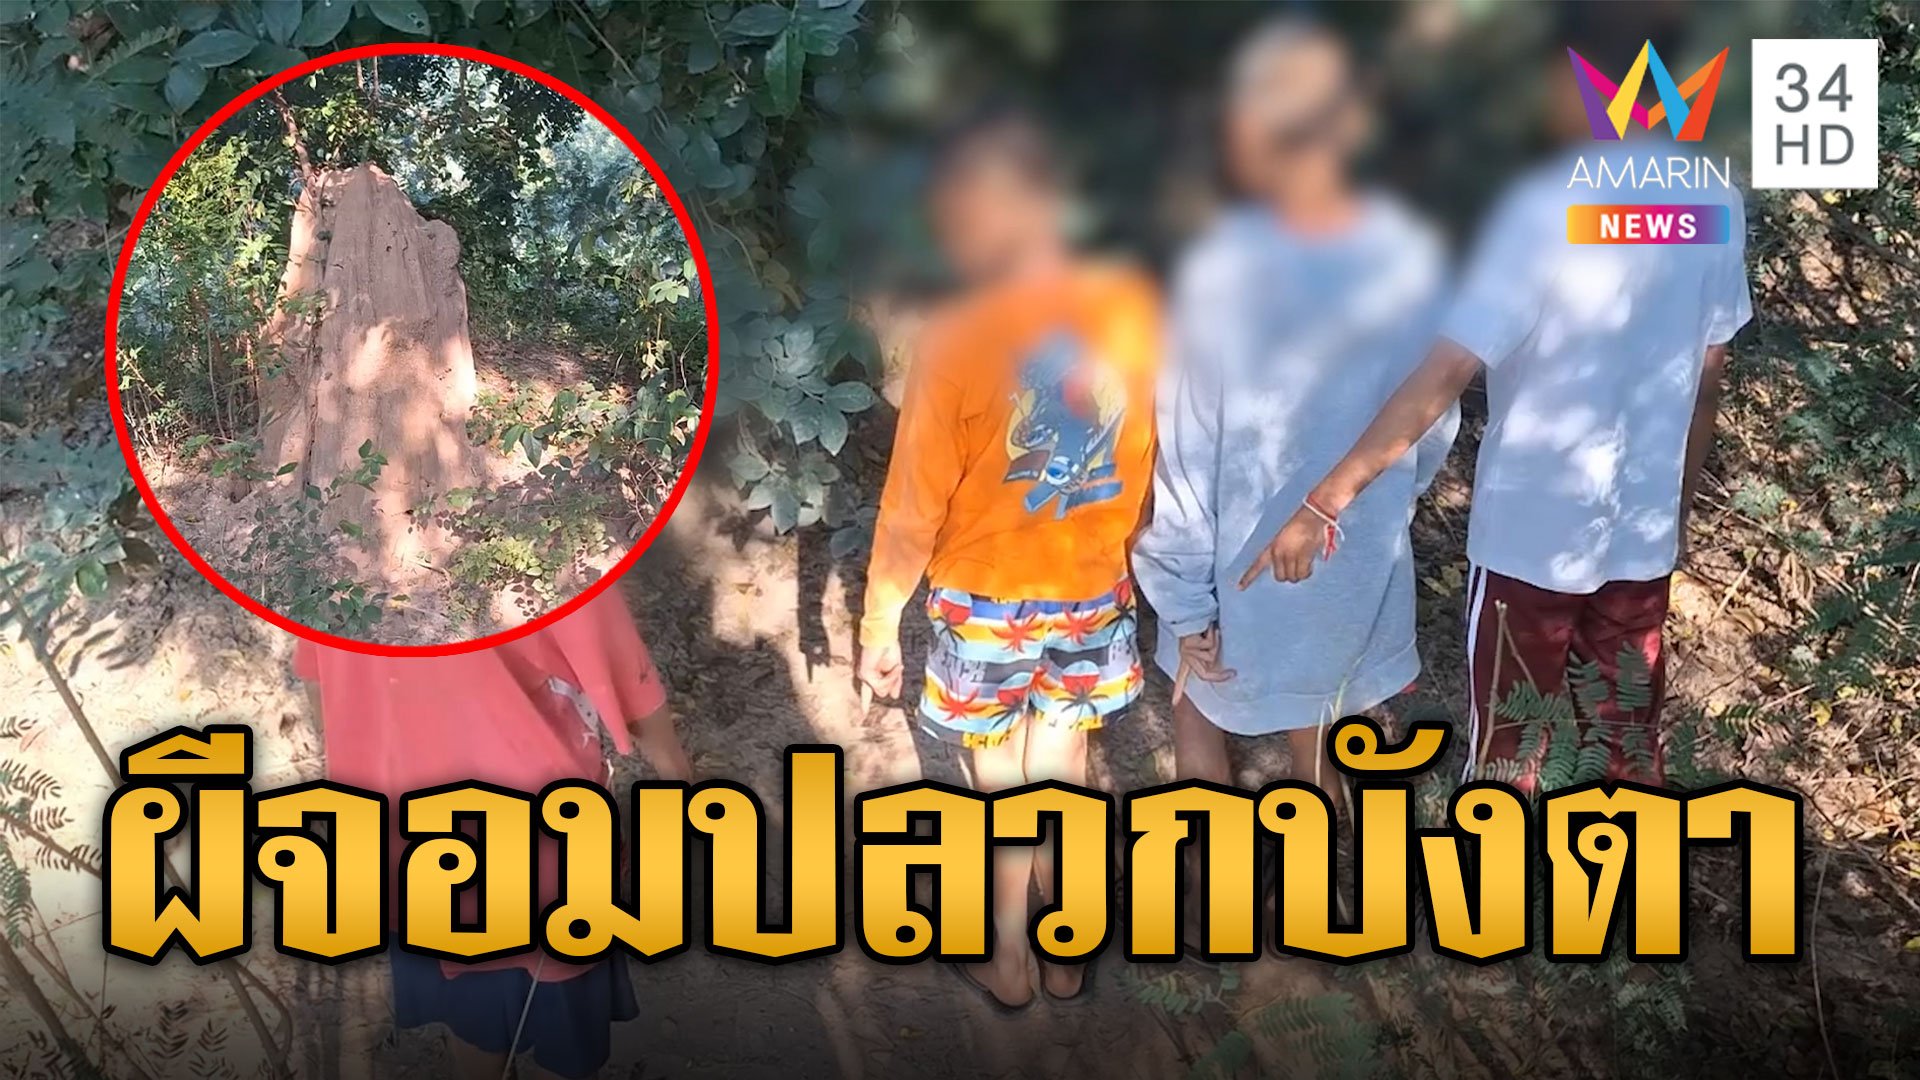 เด็ก 4 คนเที่ยวป่าหายเข้าหลง 2 คืน เชื่ออาถรรพ์ผีจอมปลวกบังตา | ข่าวอรุณอมรินทร์ | 12 ธ.ค. 66 | AMARIN TVHD34